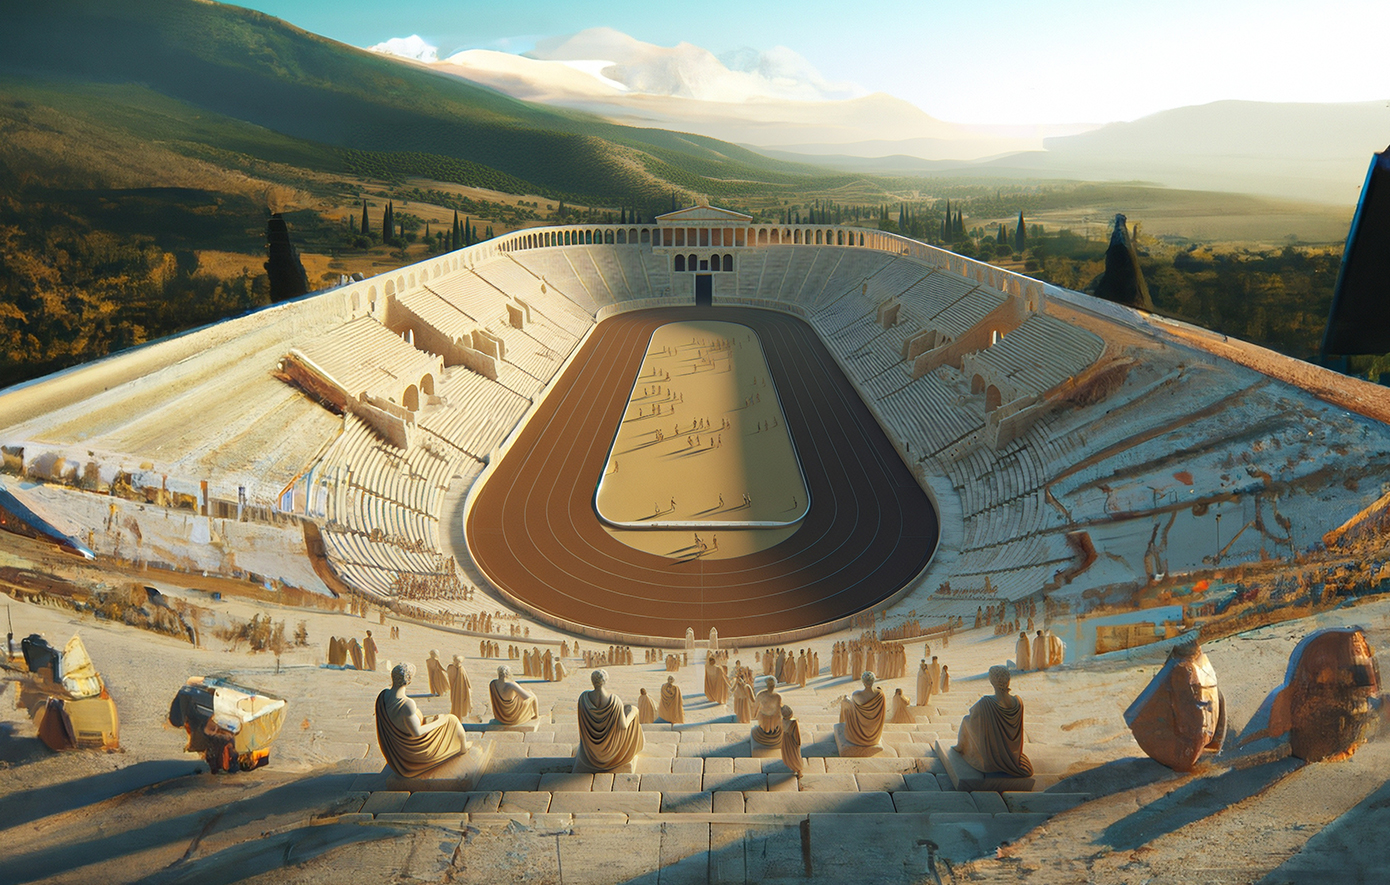 Οι διαιτητές στους αρχαίους Ολυμπιακούς Αγώνες επέβαλαν τον νόμο με τη βία και δημόσιο μαστίγωμα